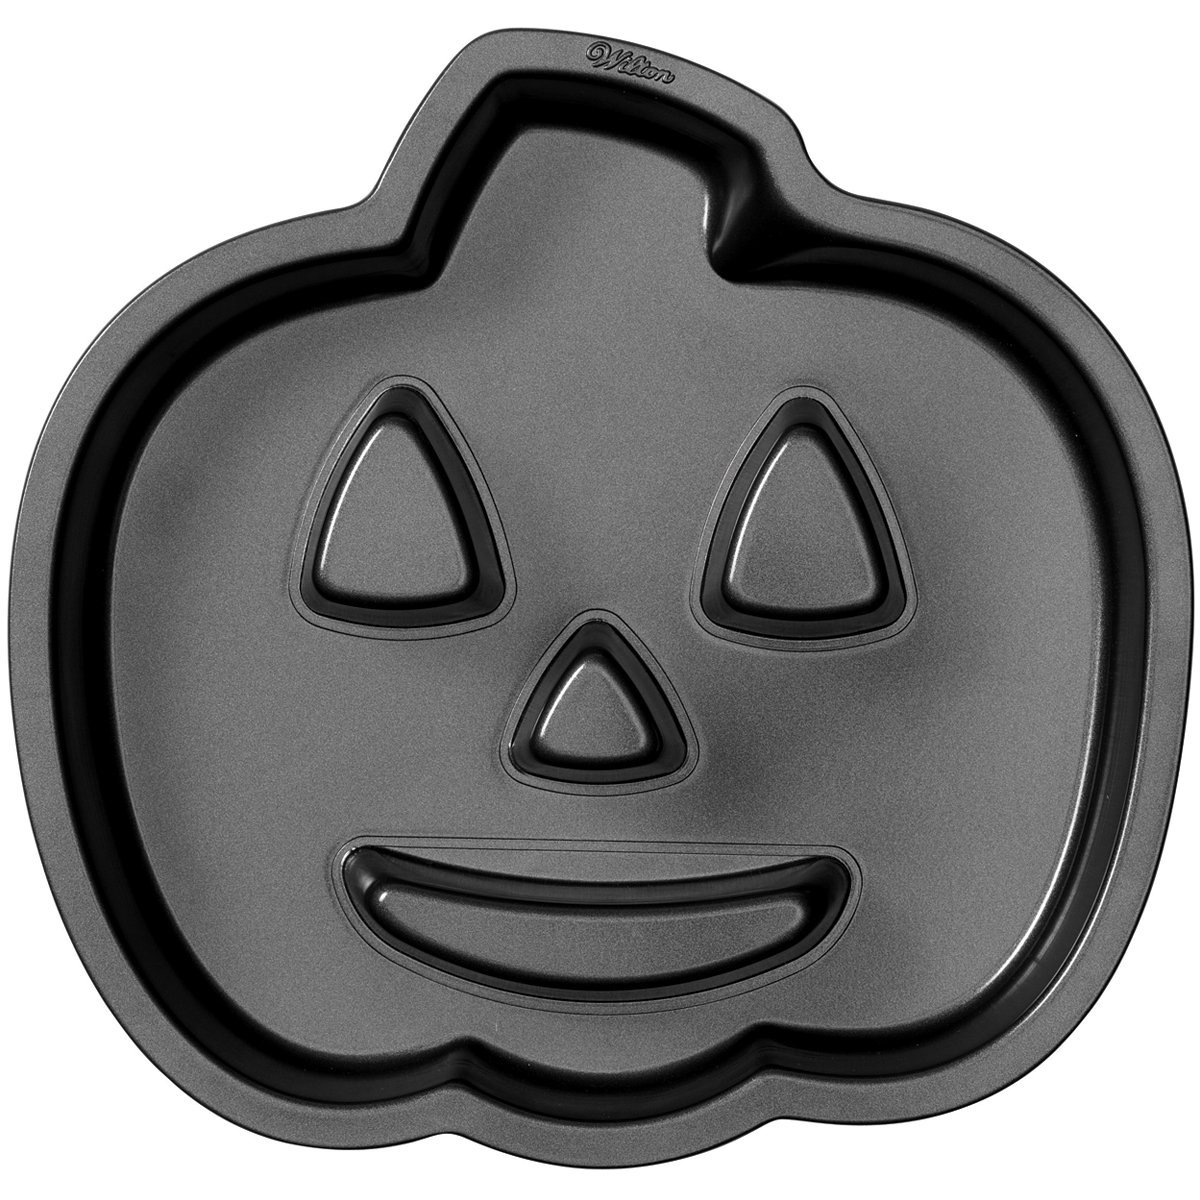 Wilton Halloween Jack-O-Lantern Fluted Cake Pan – Just $7.99!